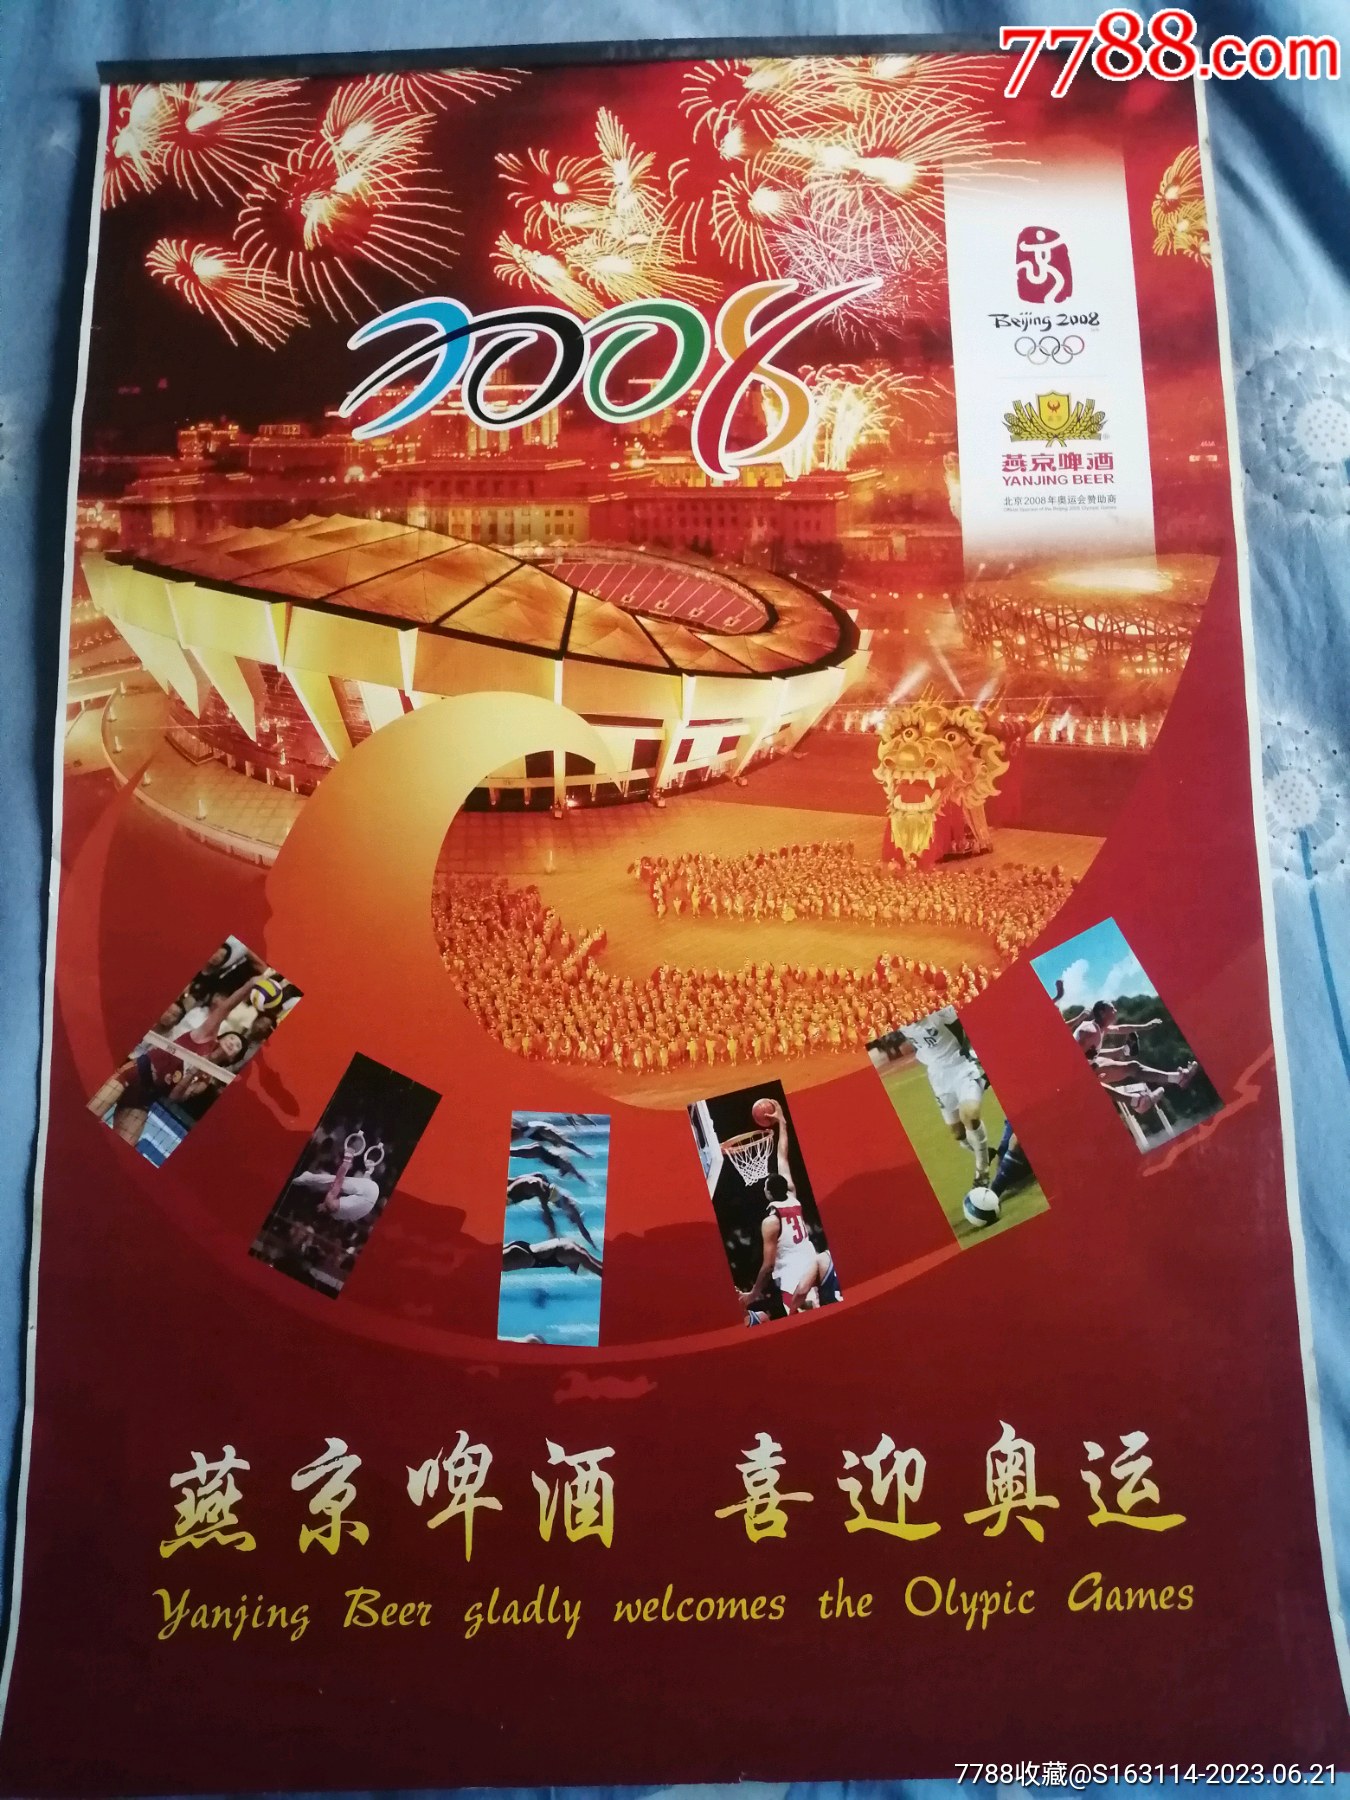 2008年燕京啤酒喜迎奥运挂历